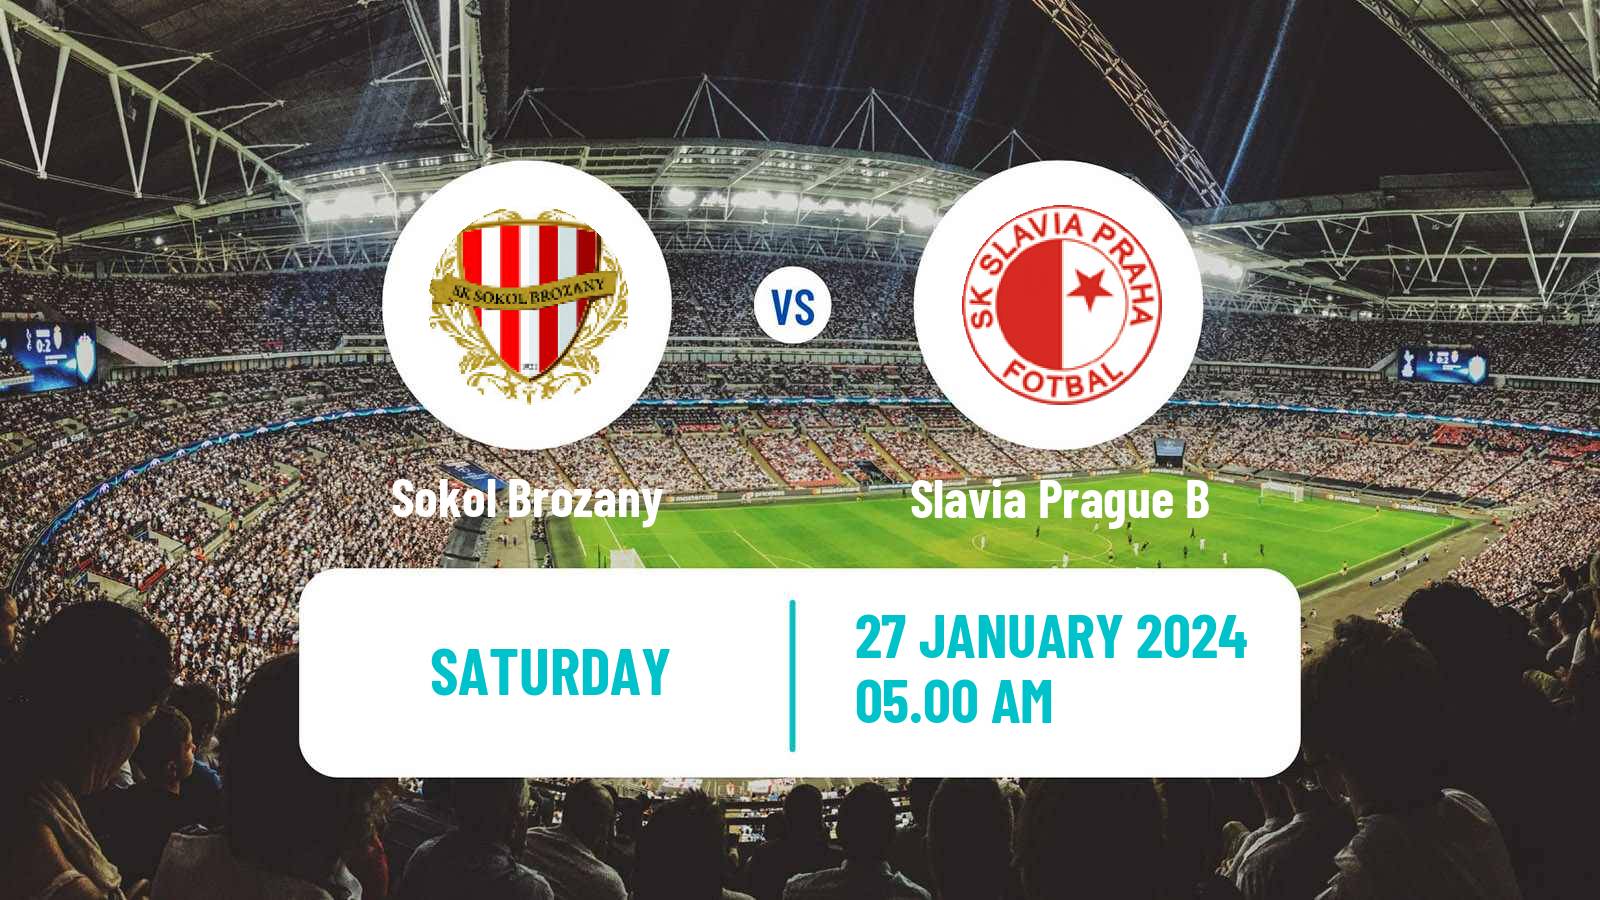 Soccer Club Friendly Sokol Brozany - Slavia Prague B